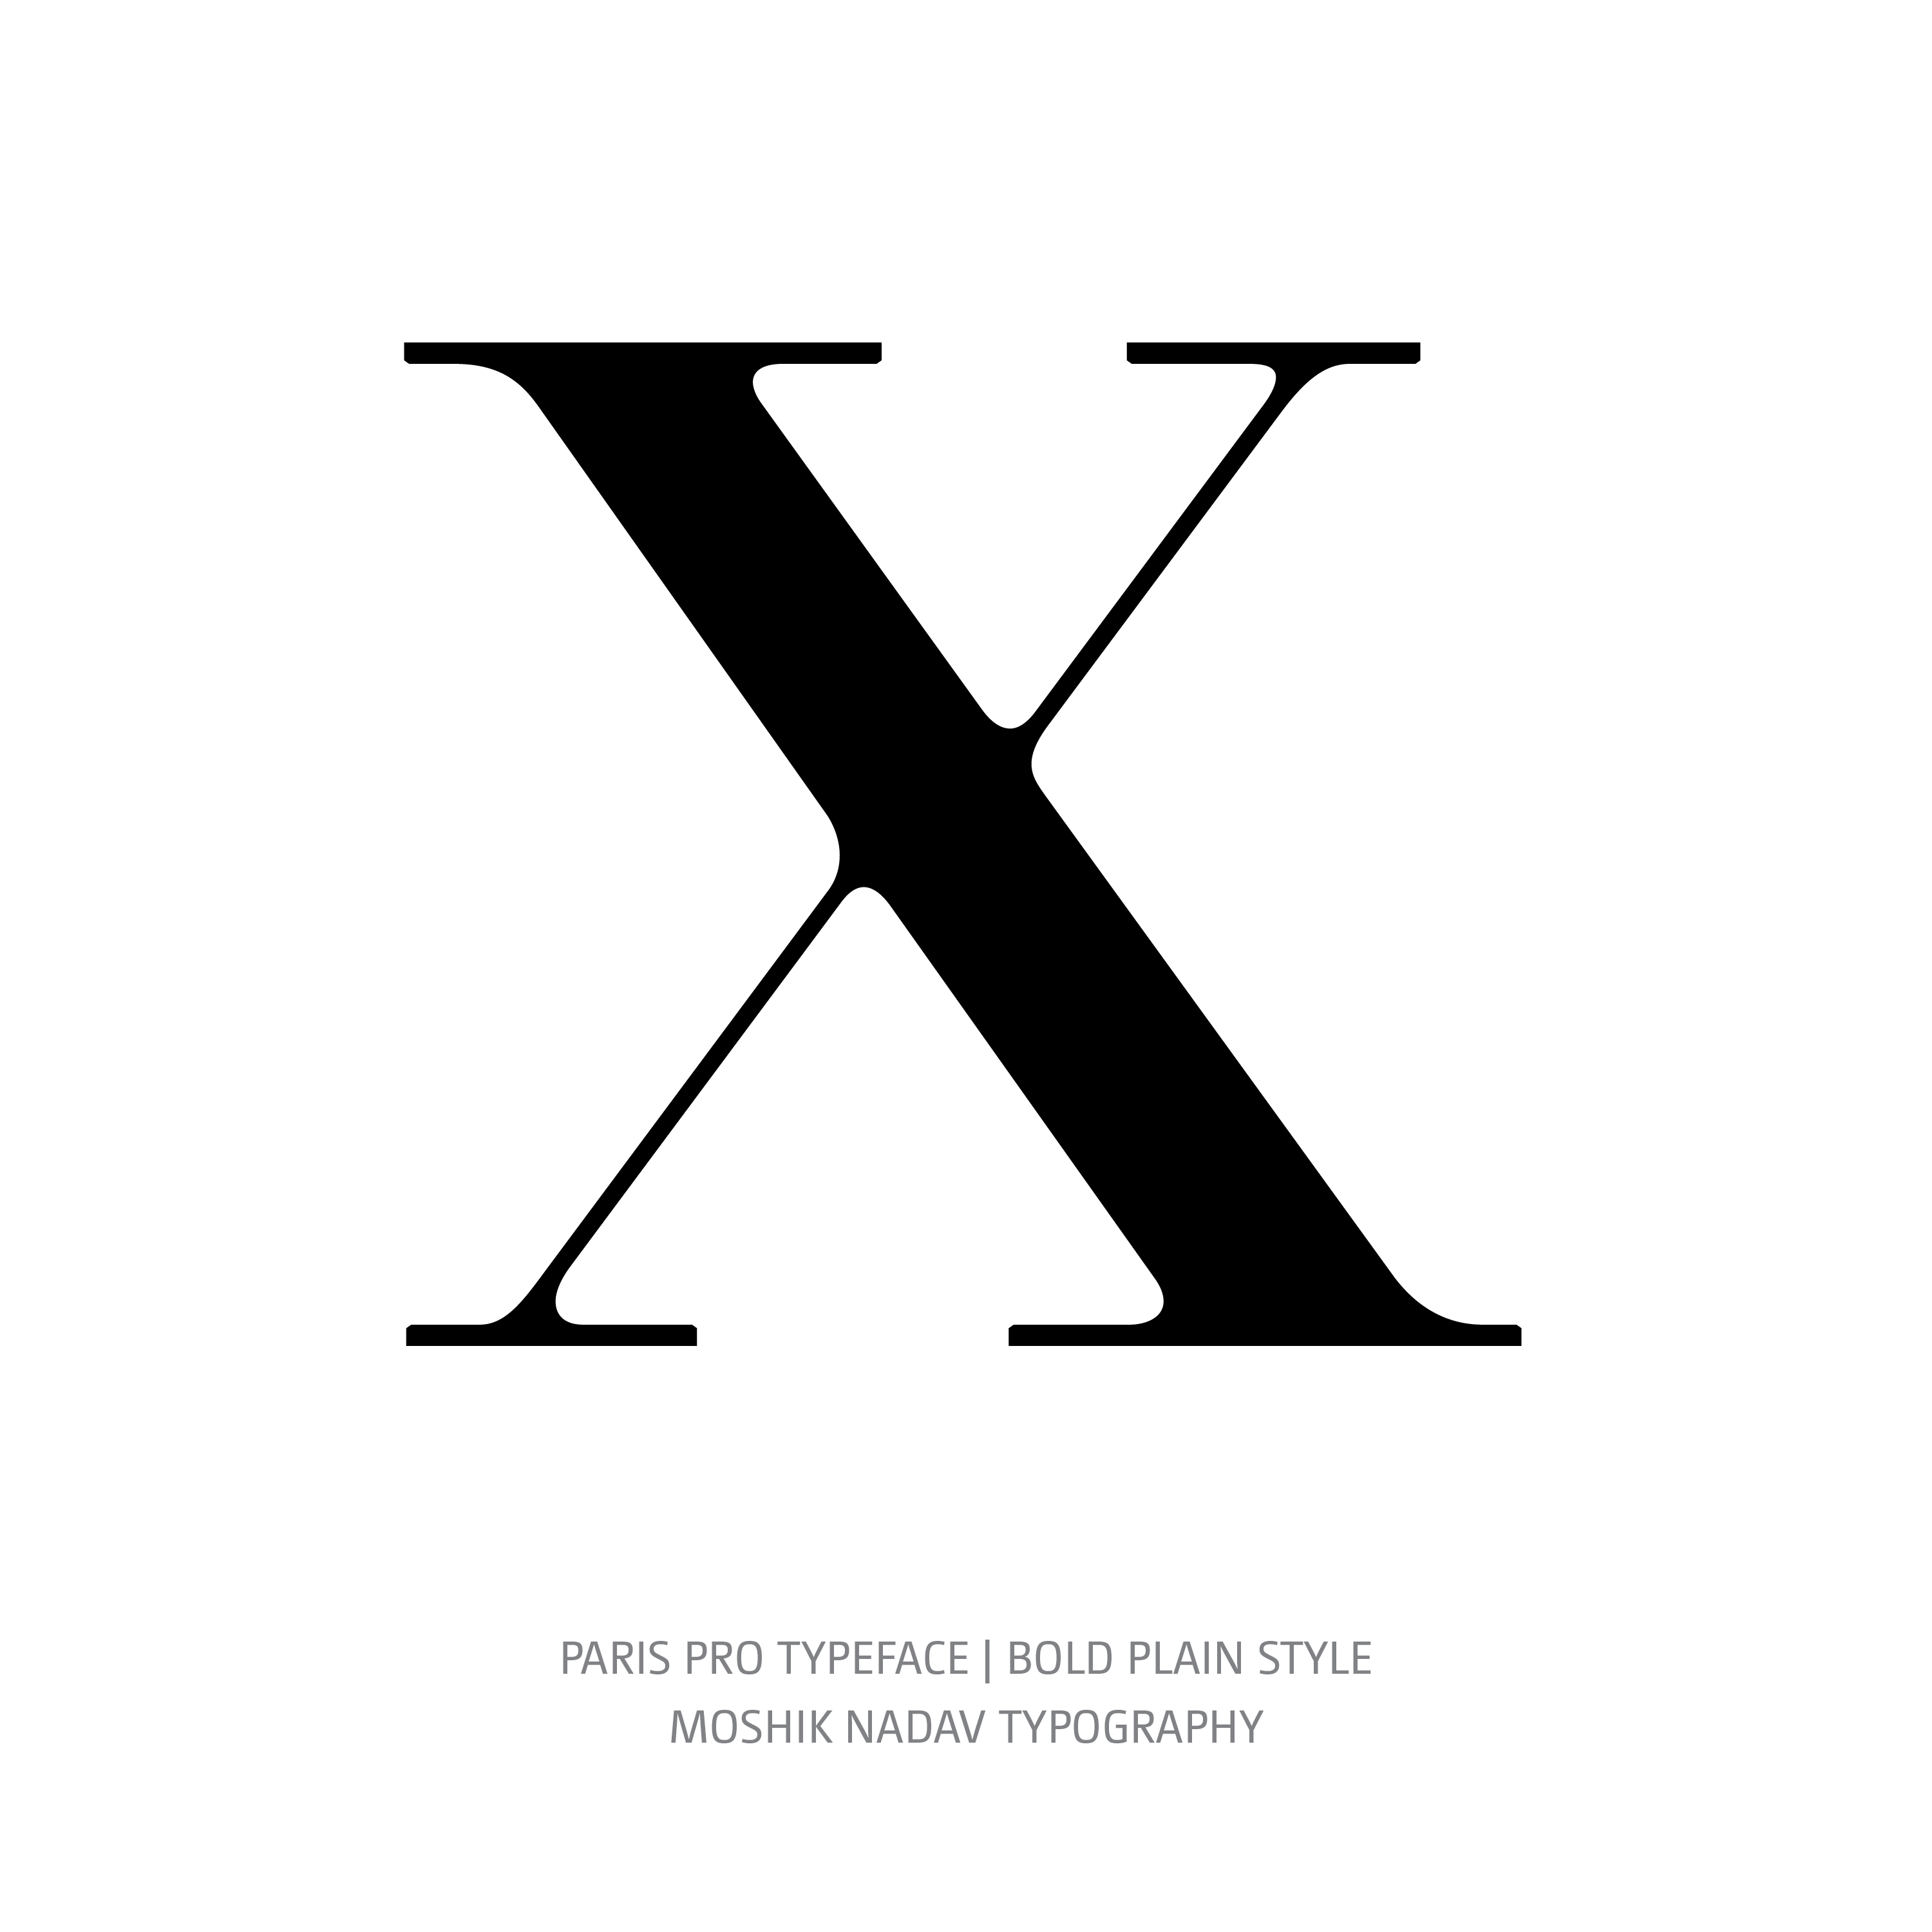 Paris Pro Typeface Bold Plain X